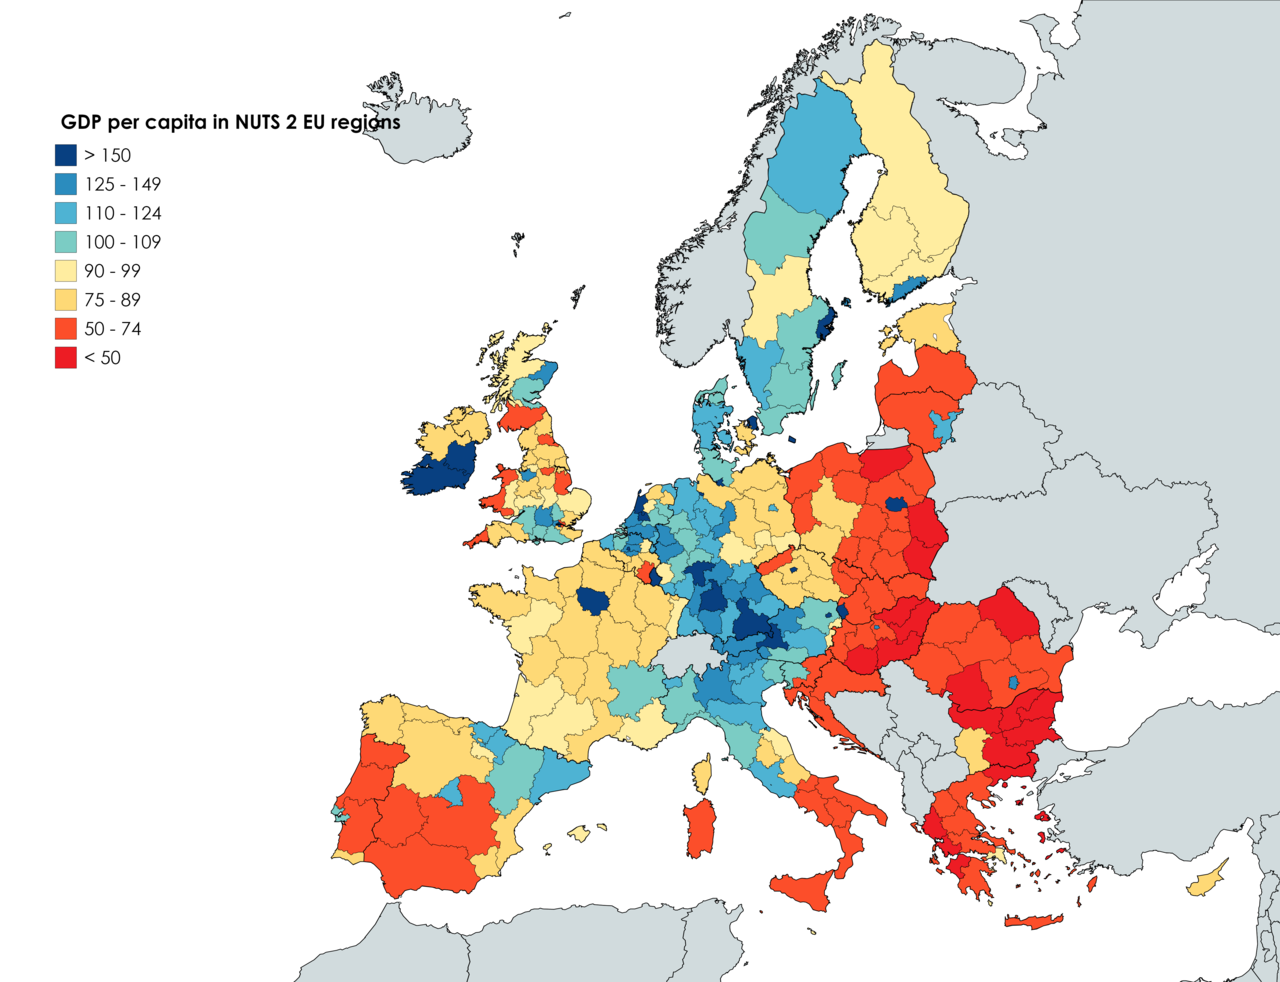 GDP_per_capita_in_NUTS_2_EU_regions im Vergleich zum EU-Durchschnitt (2017), Fede-5-19, CC BY-Sa 4.0.png